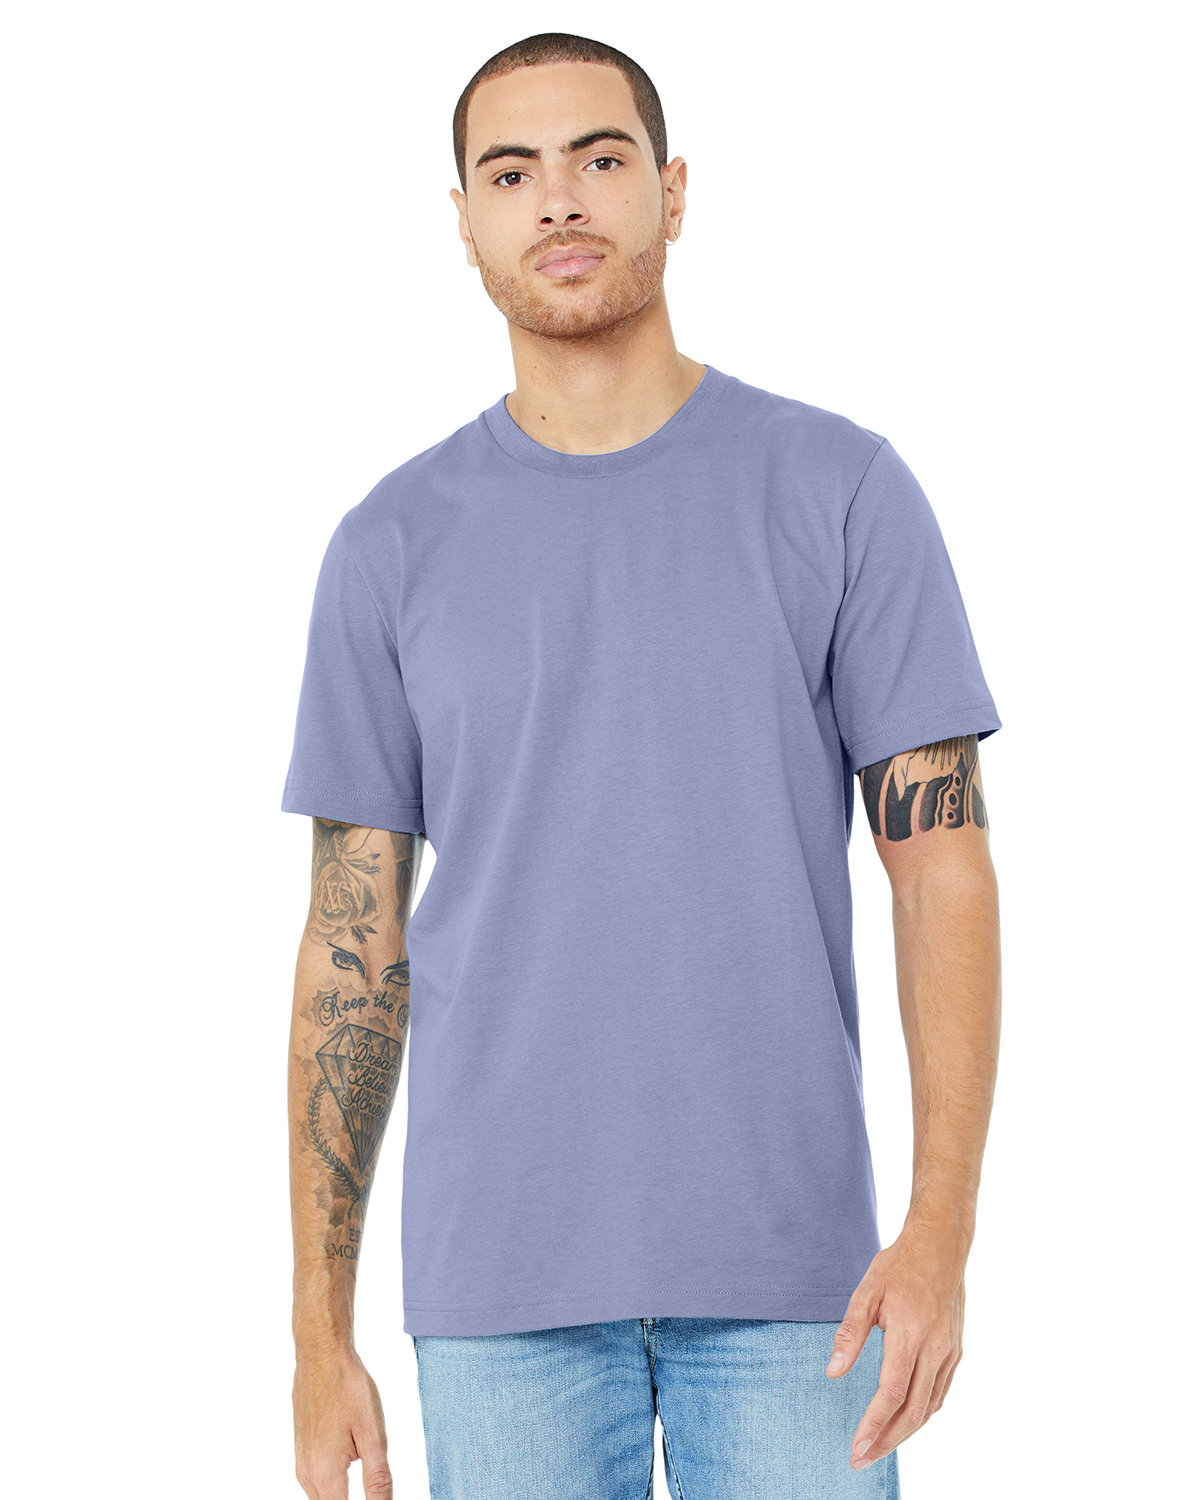 Bella + Canvas Unisex Jersey T-Shirt LAVENDER BLUE 